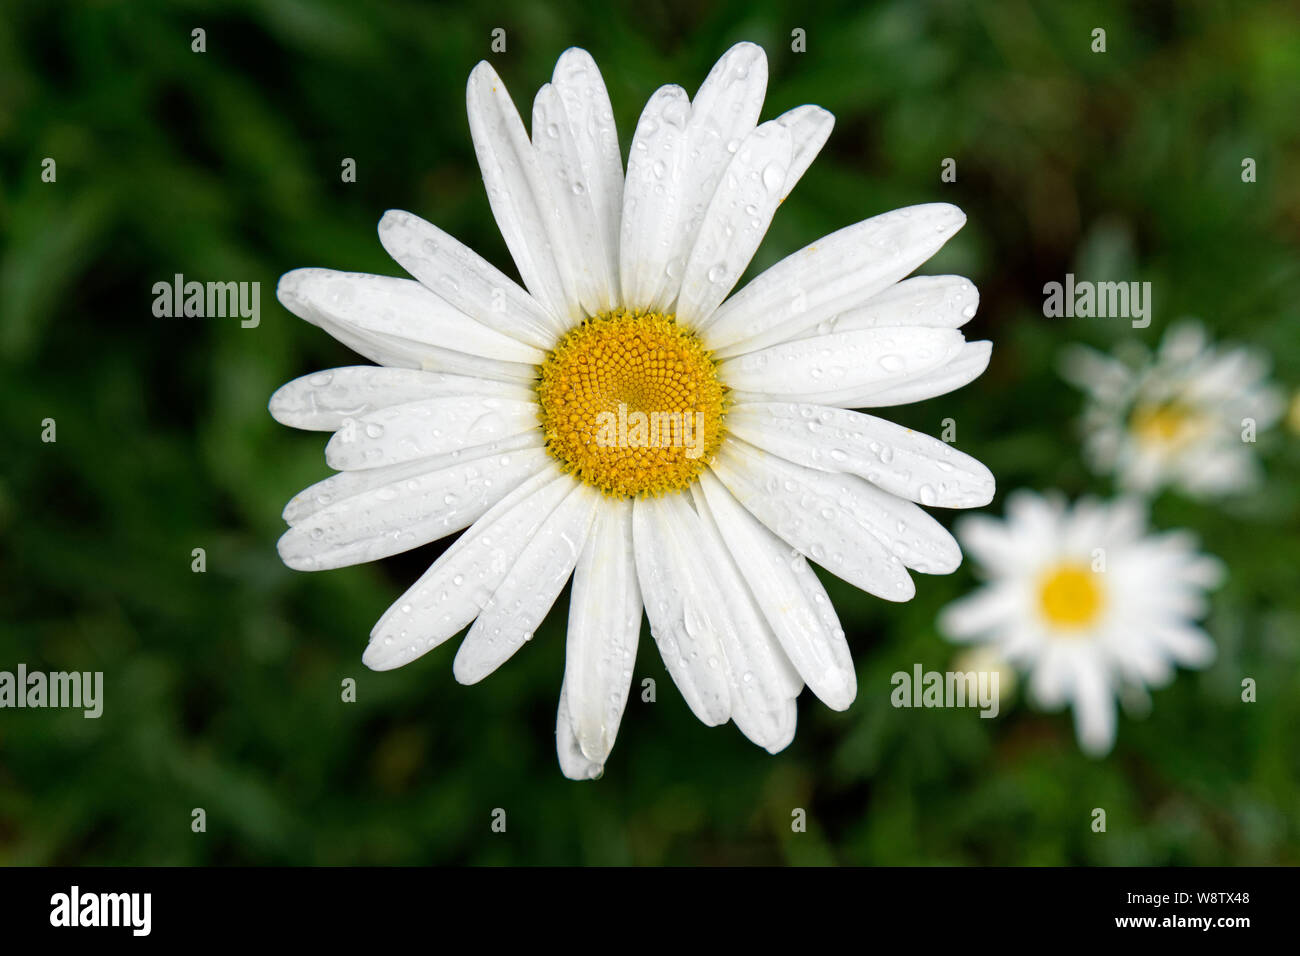 Libre en blanc oxeye daisy flower avec gouttes de rosée s'accrochant à ses pétales, British Columbia, Canada Banque D'Images